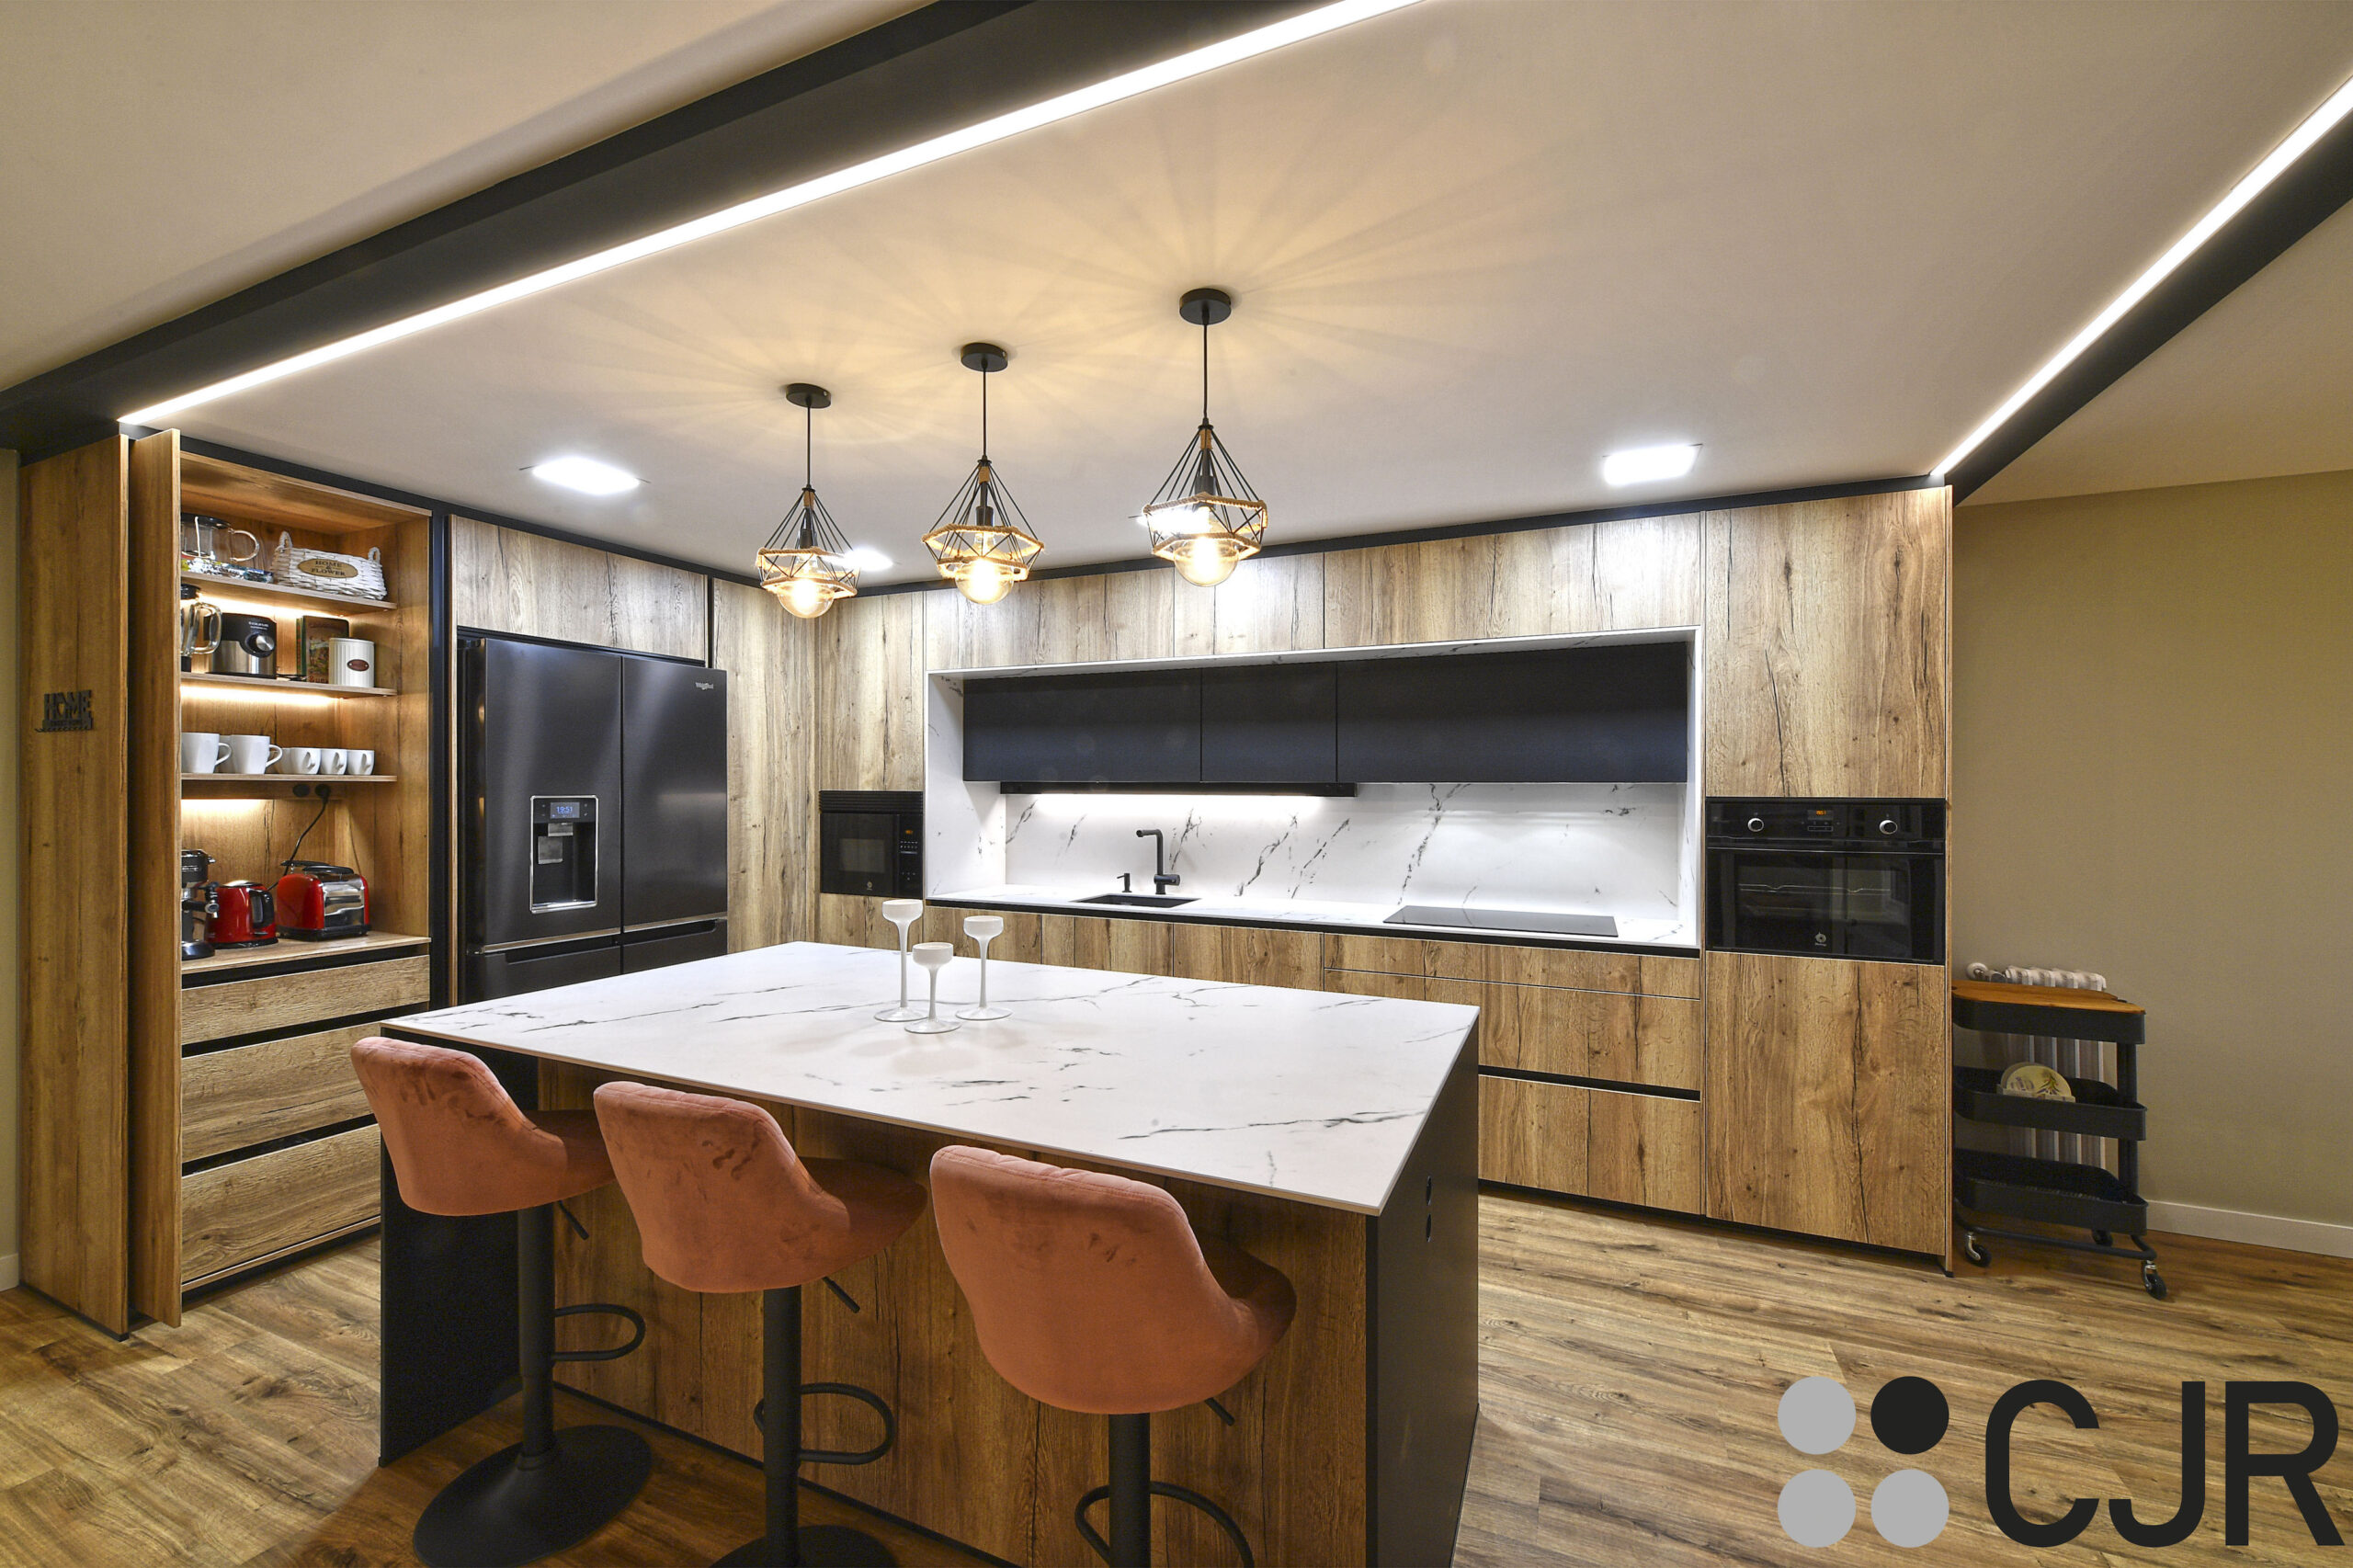 cocina abierta al salon con desayunador escamoteable con iluminacion interior cjr